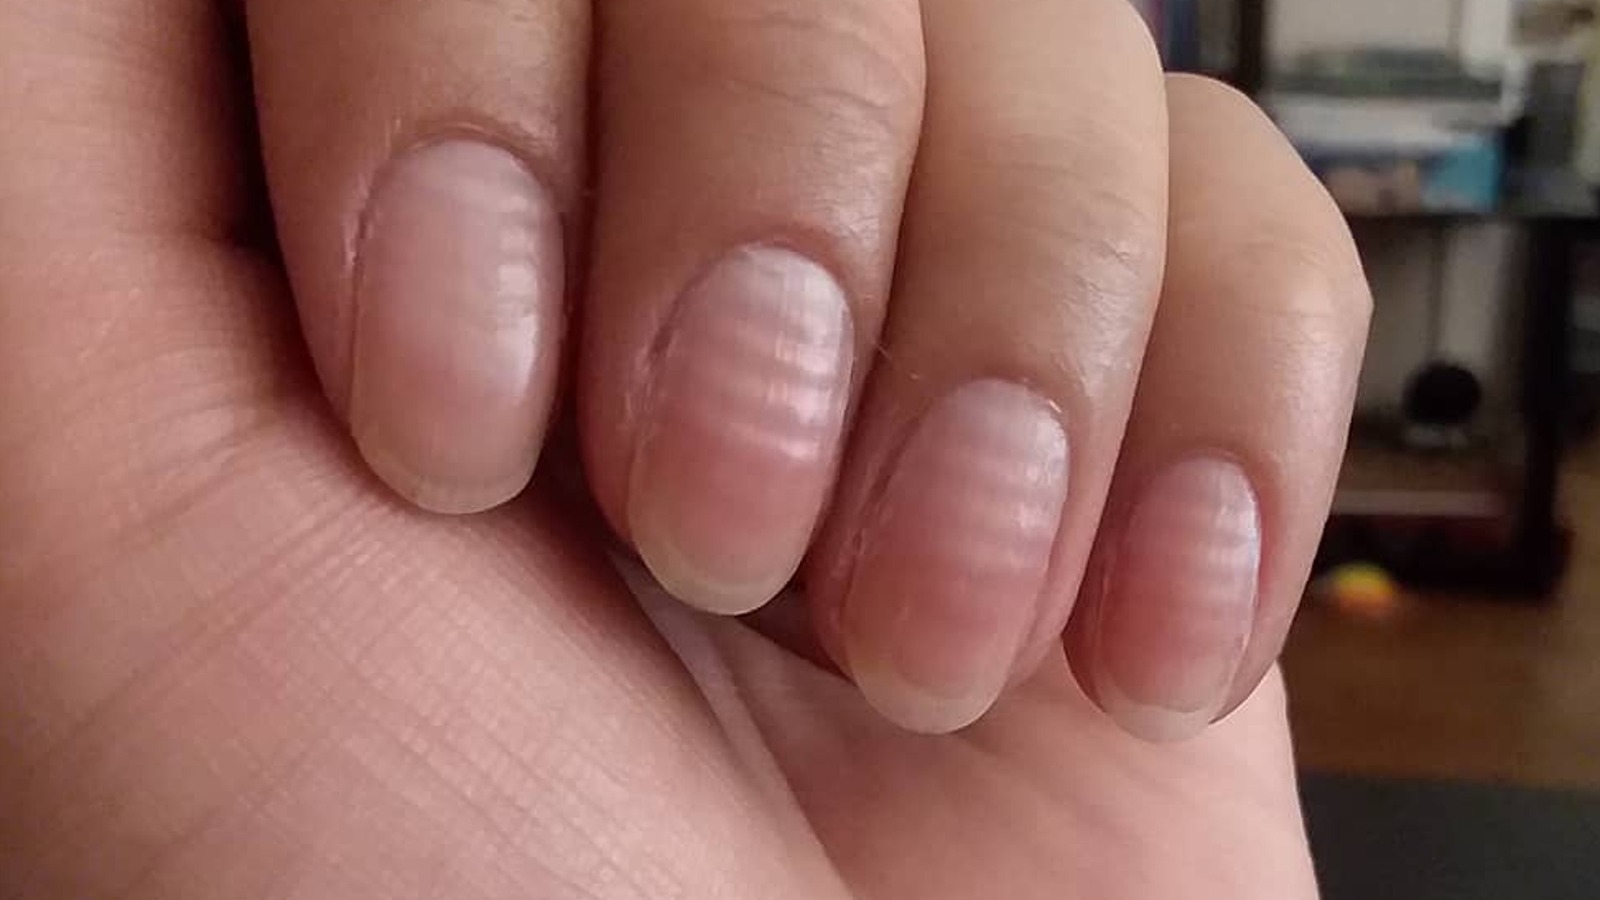 तुमच्या नखांवरही आहेत का पांढरे डाग ? कॅल्शिअमची कमतरता नव्हे, 'हे' आहे  त्यामागचं खरं कारण - Marathi News | White spots on nails are sign of zinc  deficiency | TV9 Marathi